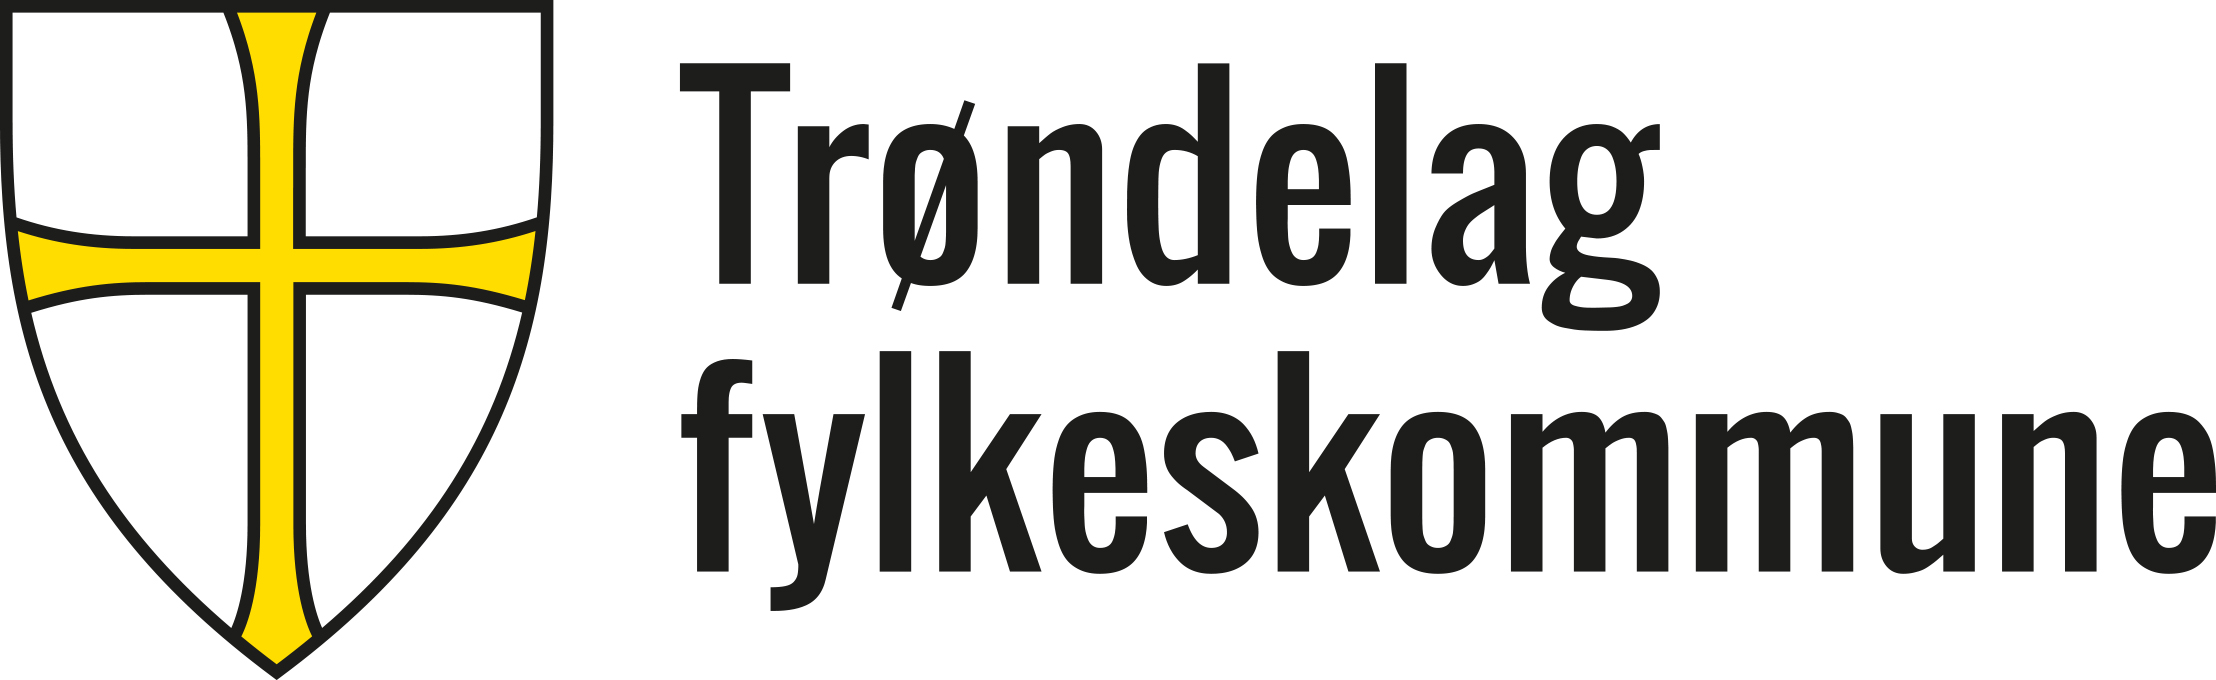 Logo Trøndelag.jpg